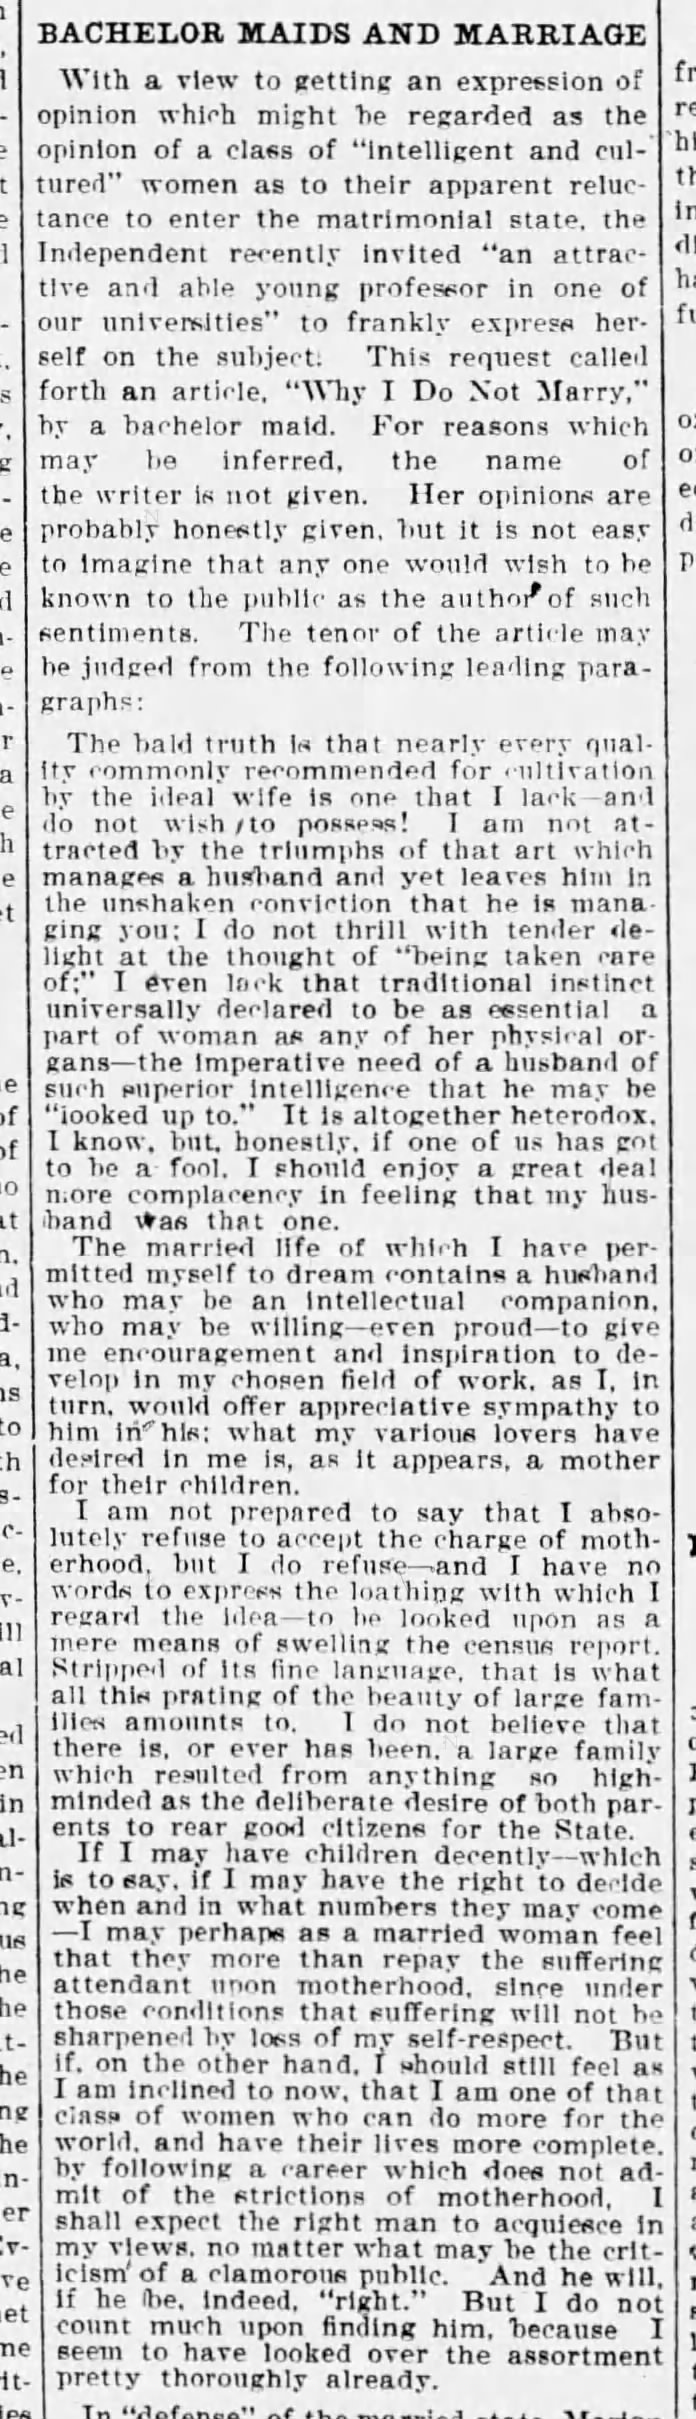 Bachelor girl's "Why I do not marry" 1904